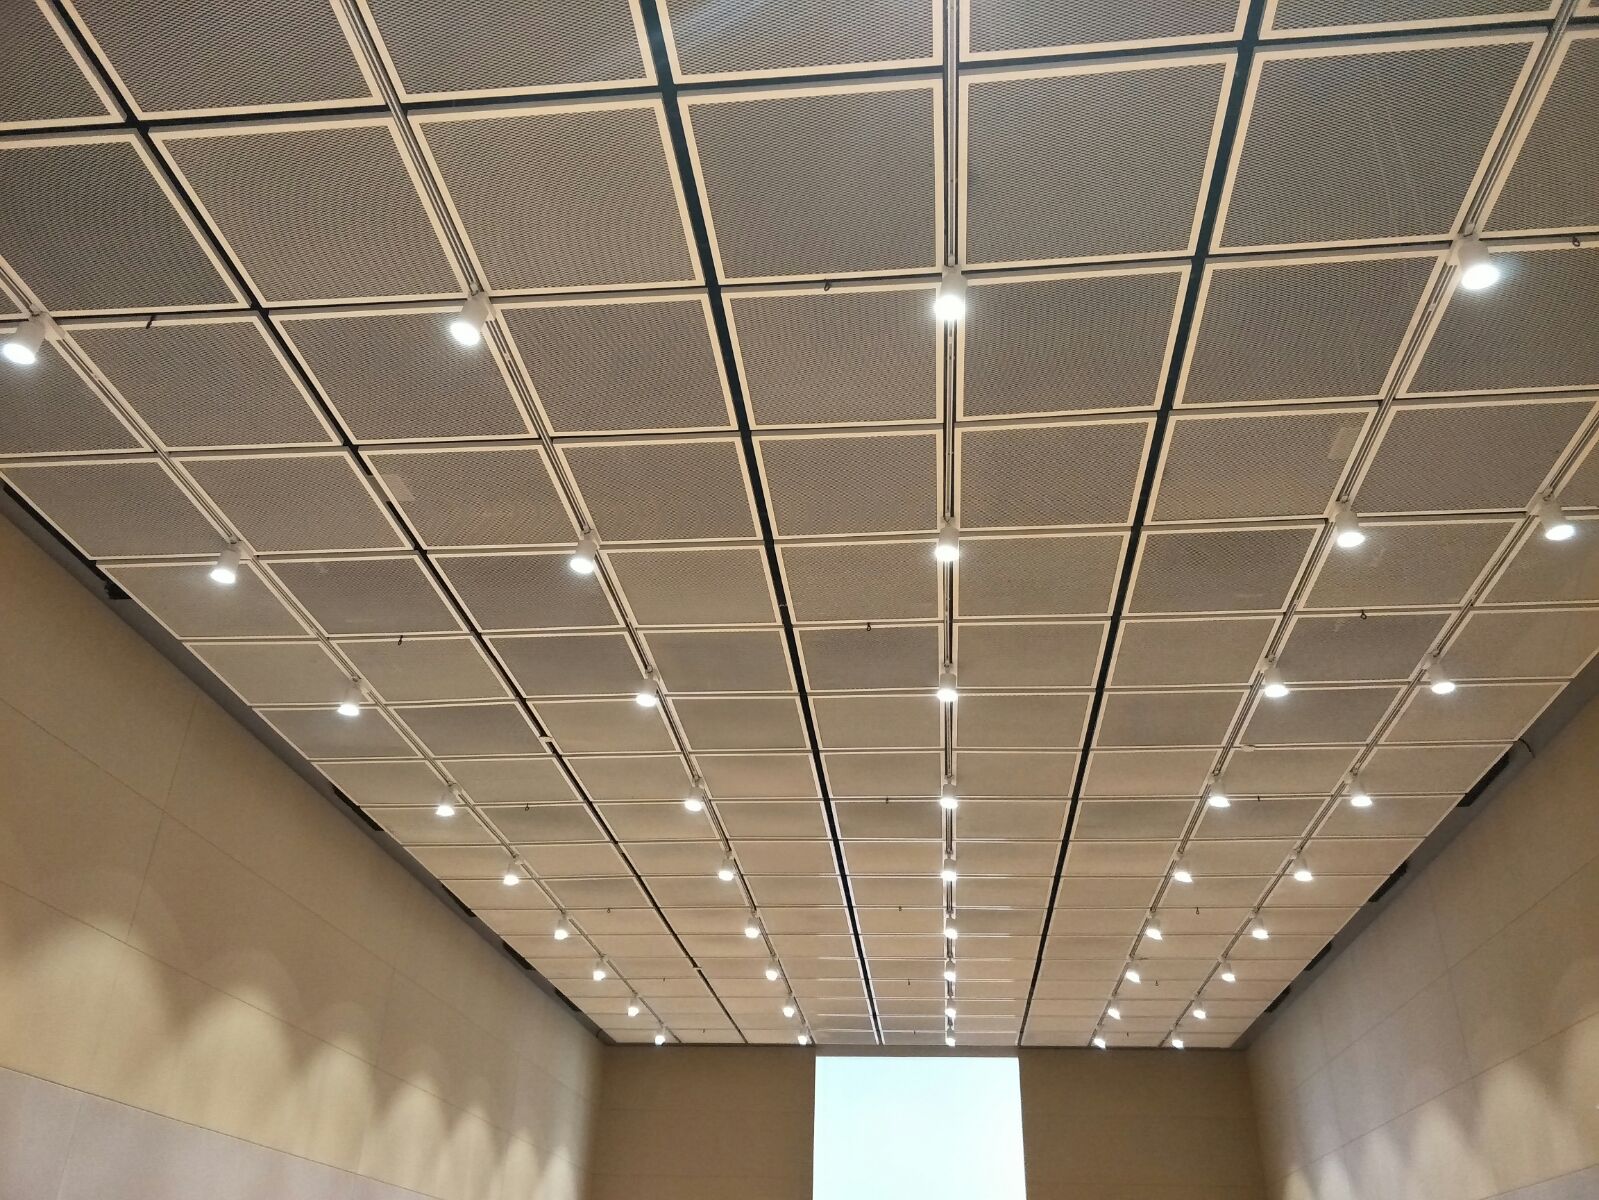 Acoustic Ceiling Panels